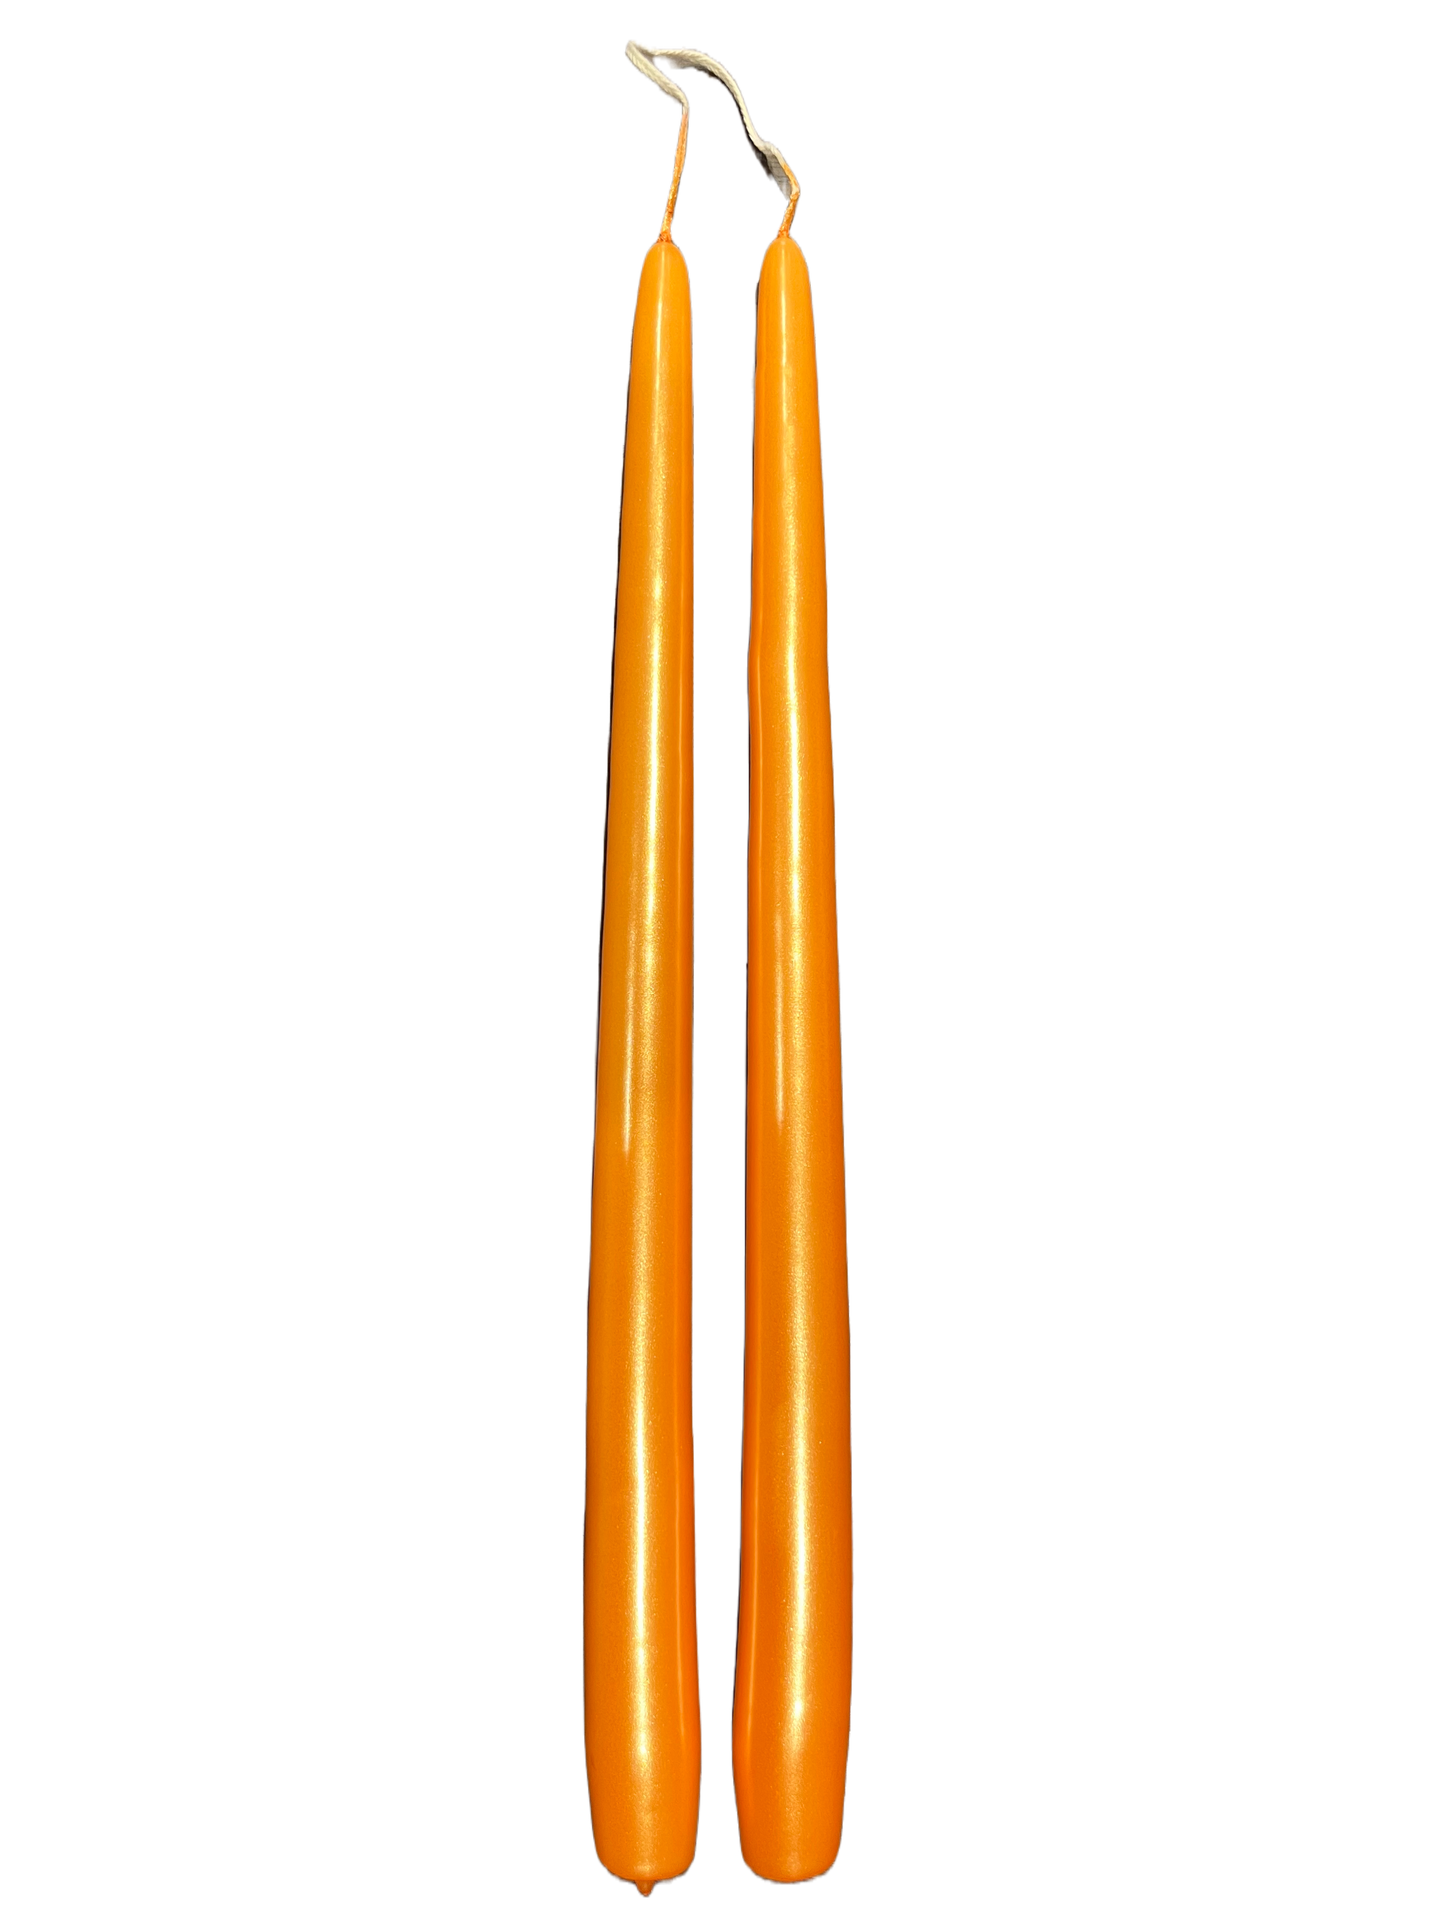 Candles Set of 2 / Metallic Orange 35 cm